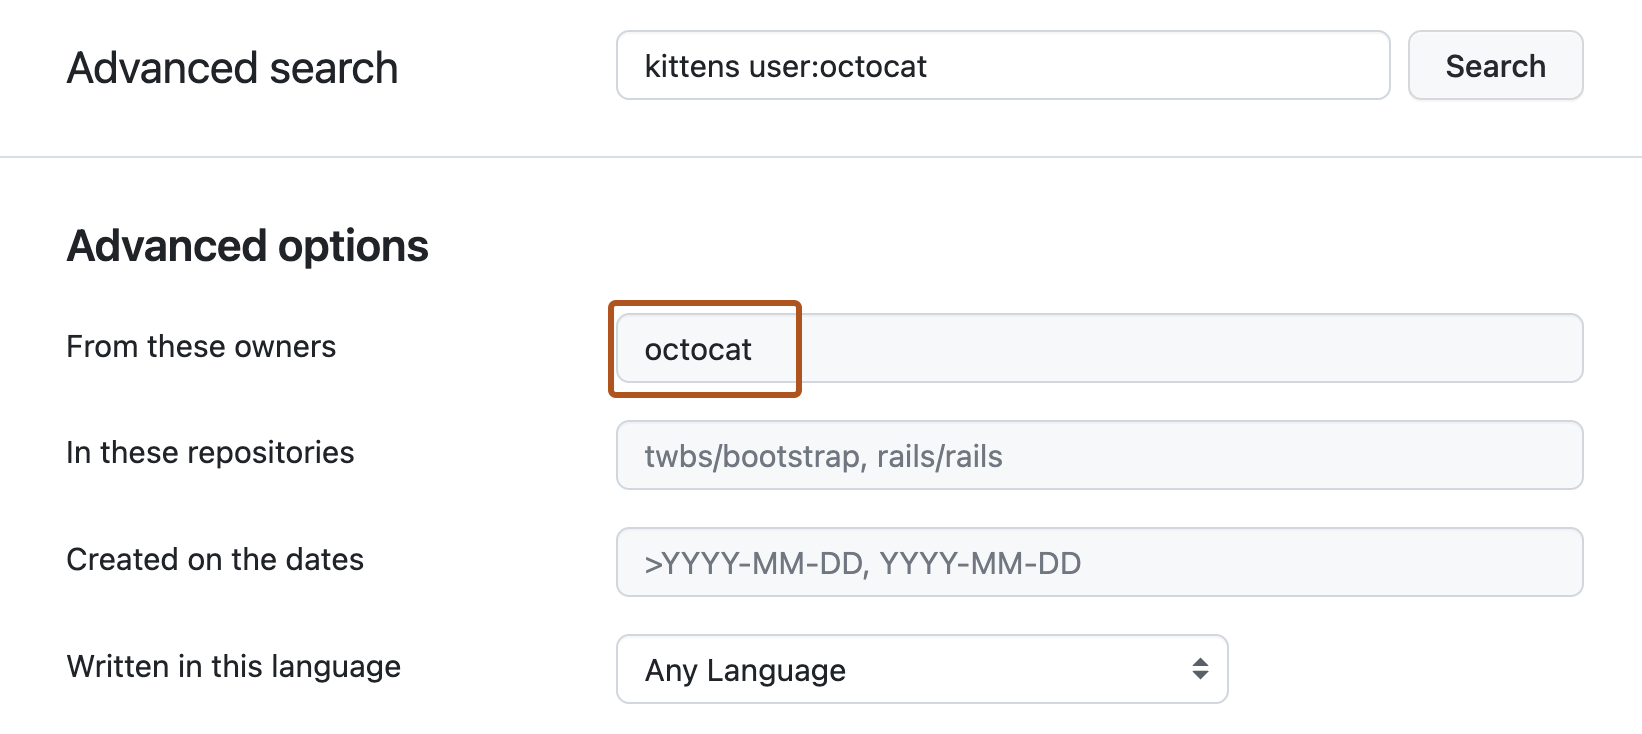 Página de pesquisa avançada. A barra de pesquisa superior contém a consulta "kittens user:octocat". Em "Opções avançadas", a caixa de texto "Desses proprietários" contém o termo "octocat".